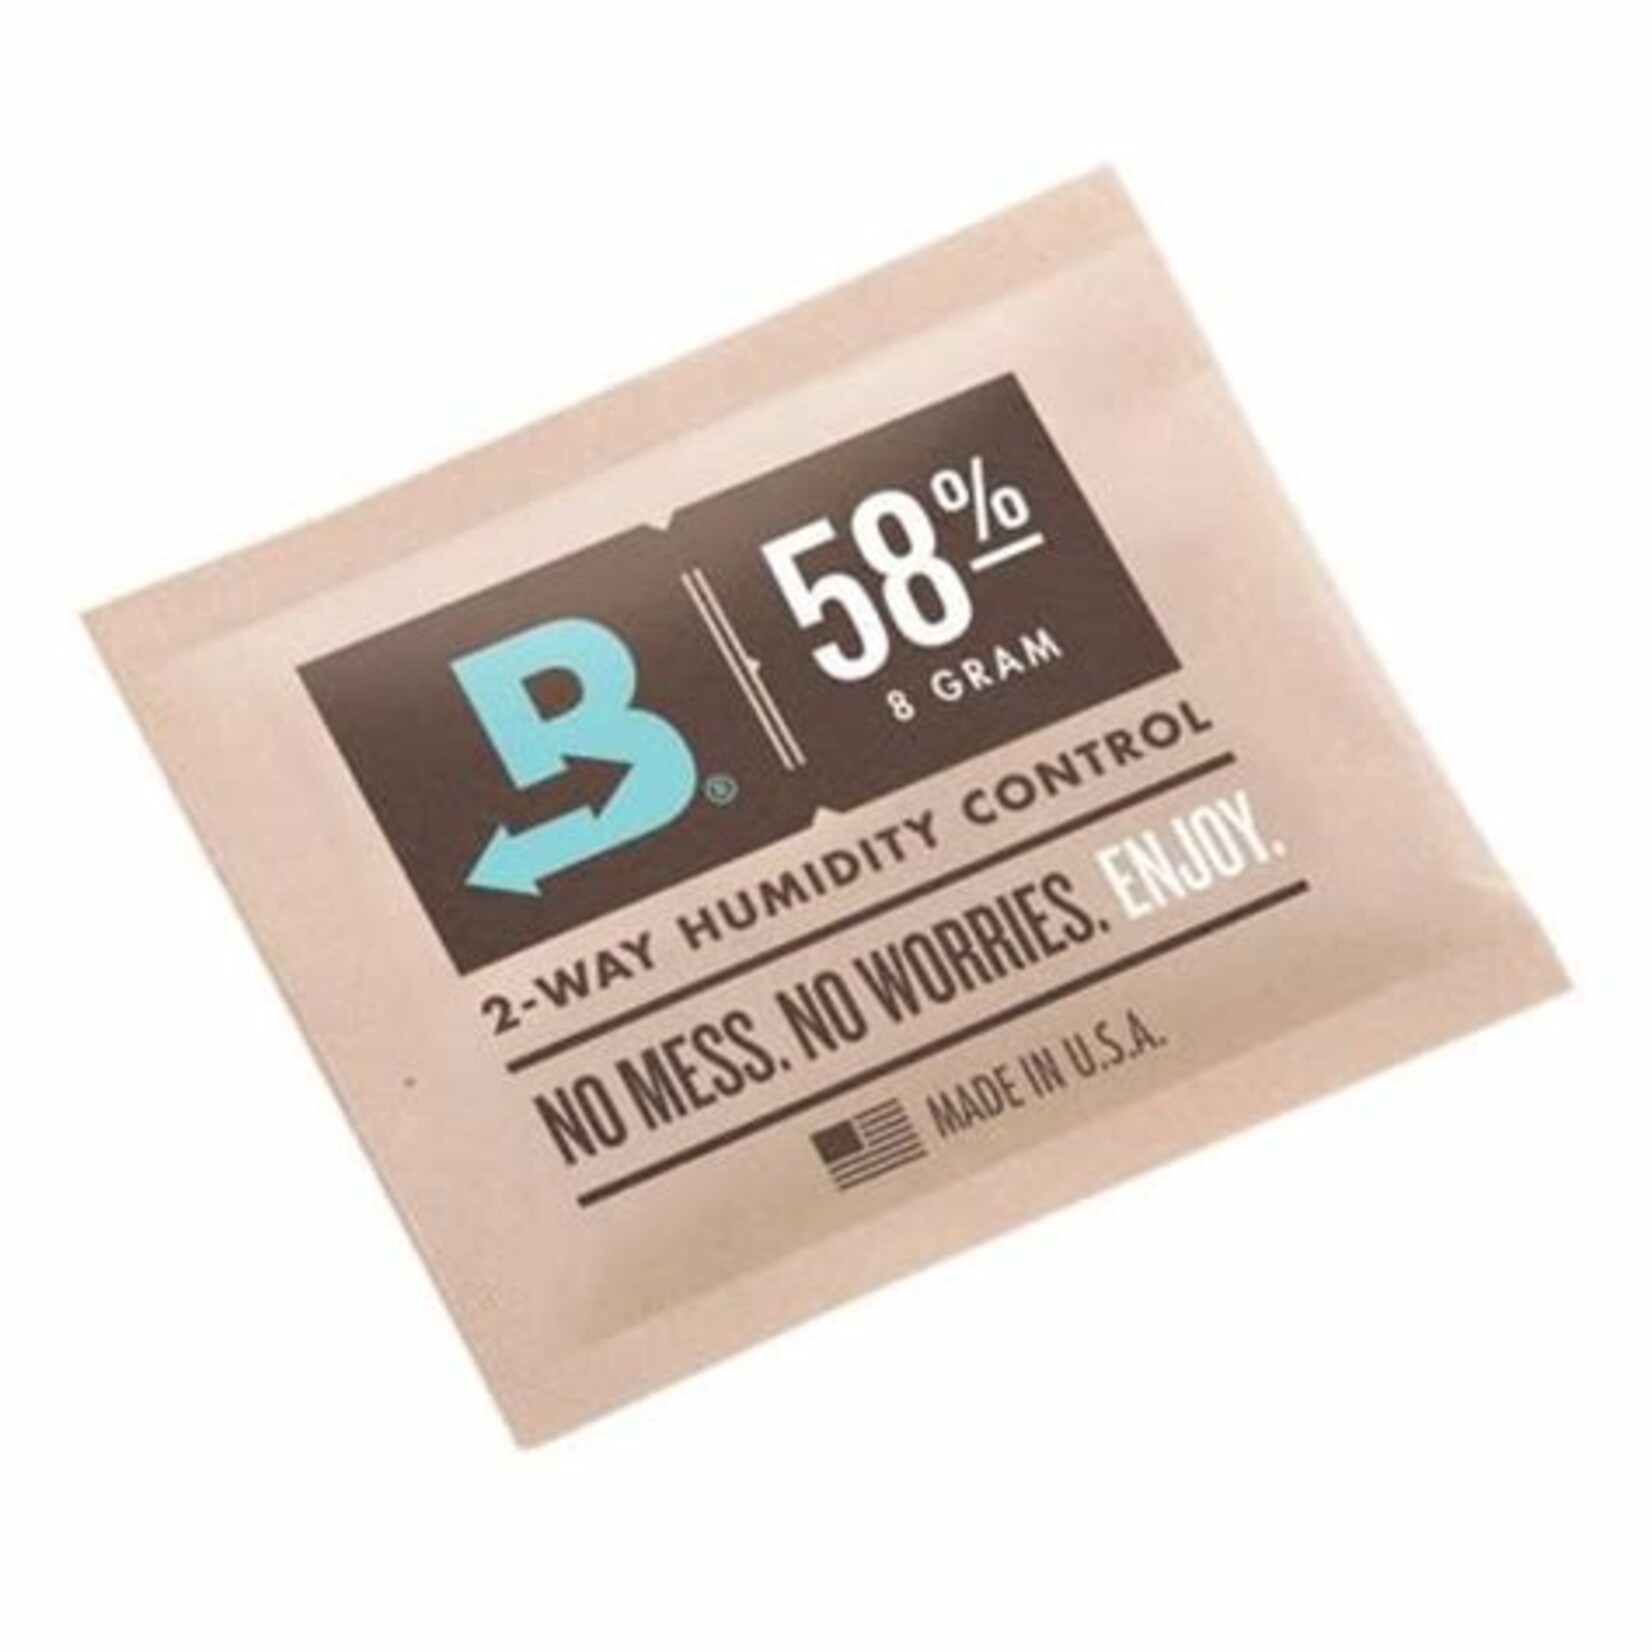 Boveda Boveda 58% 8 gram 2-Way Humidity Control Pack